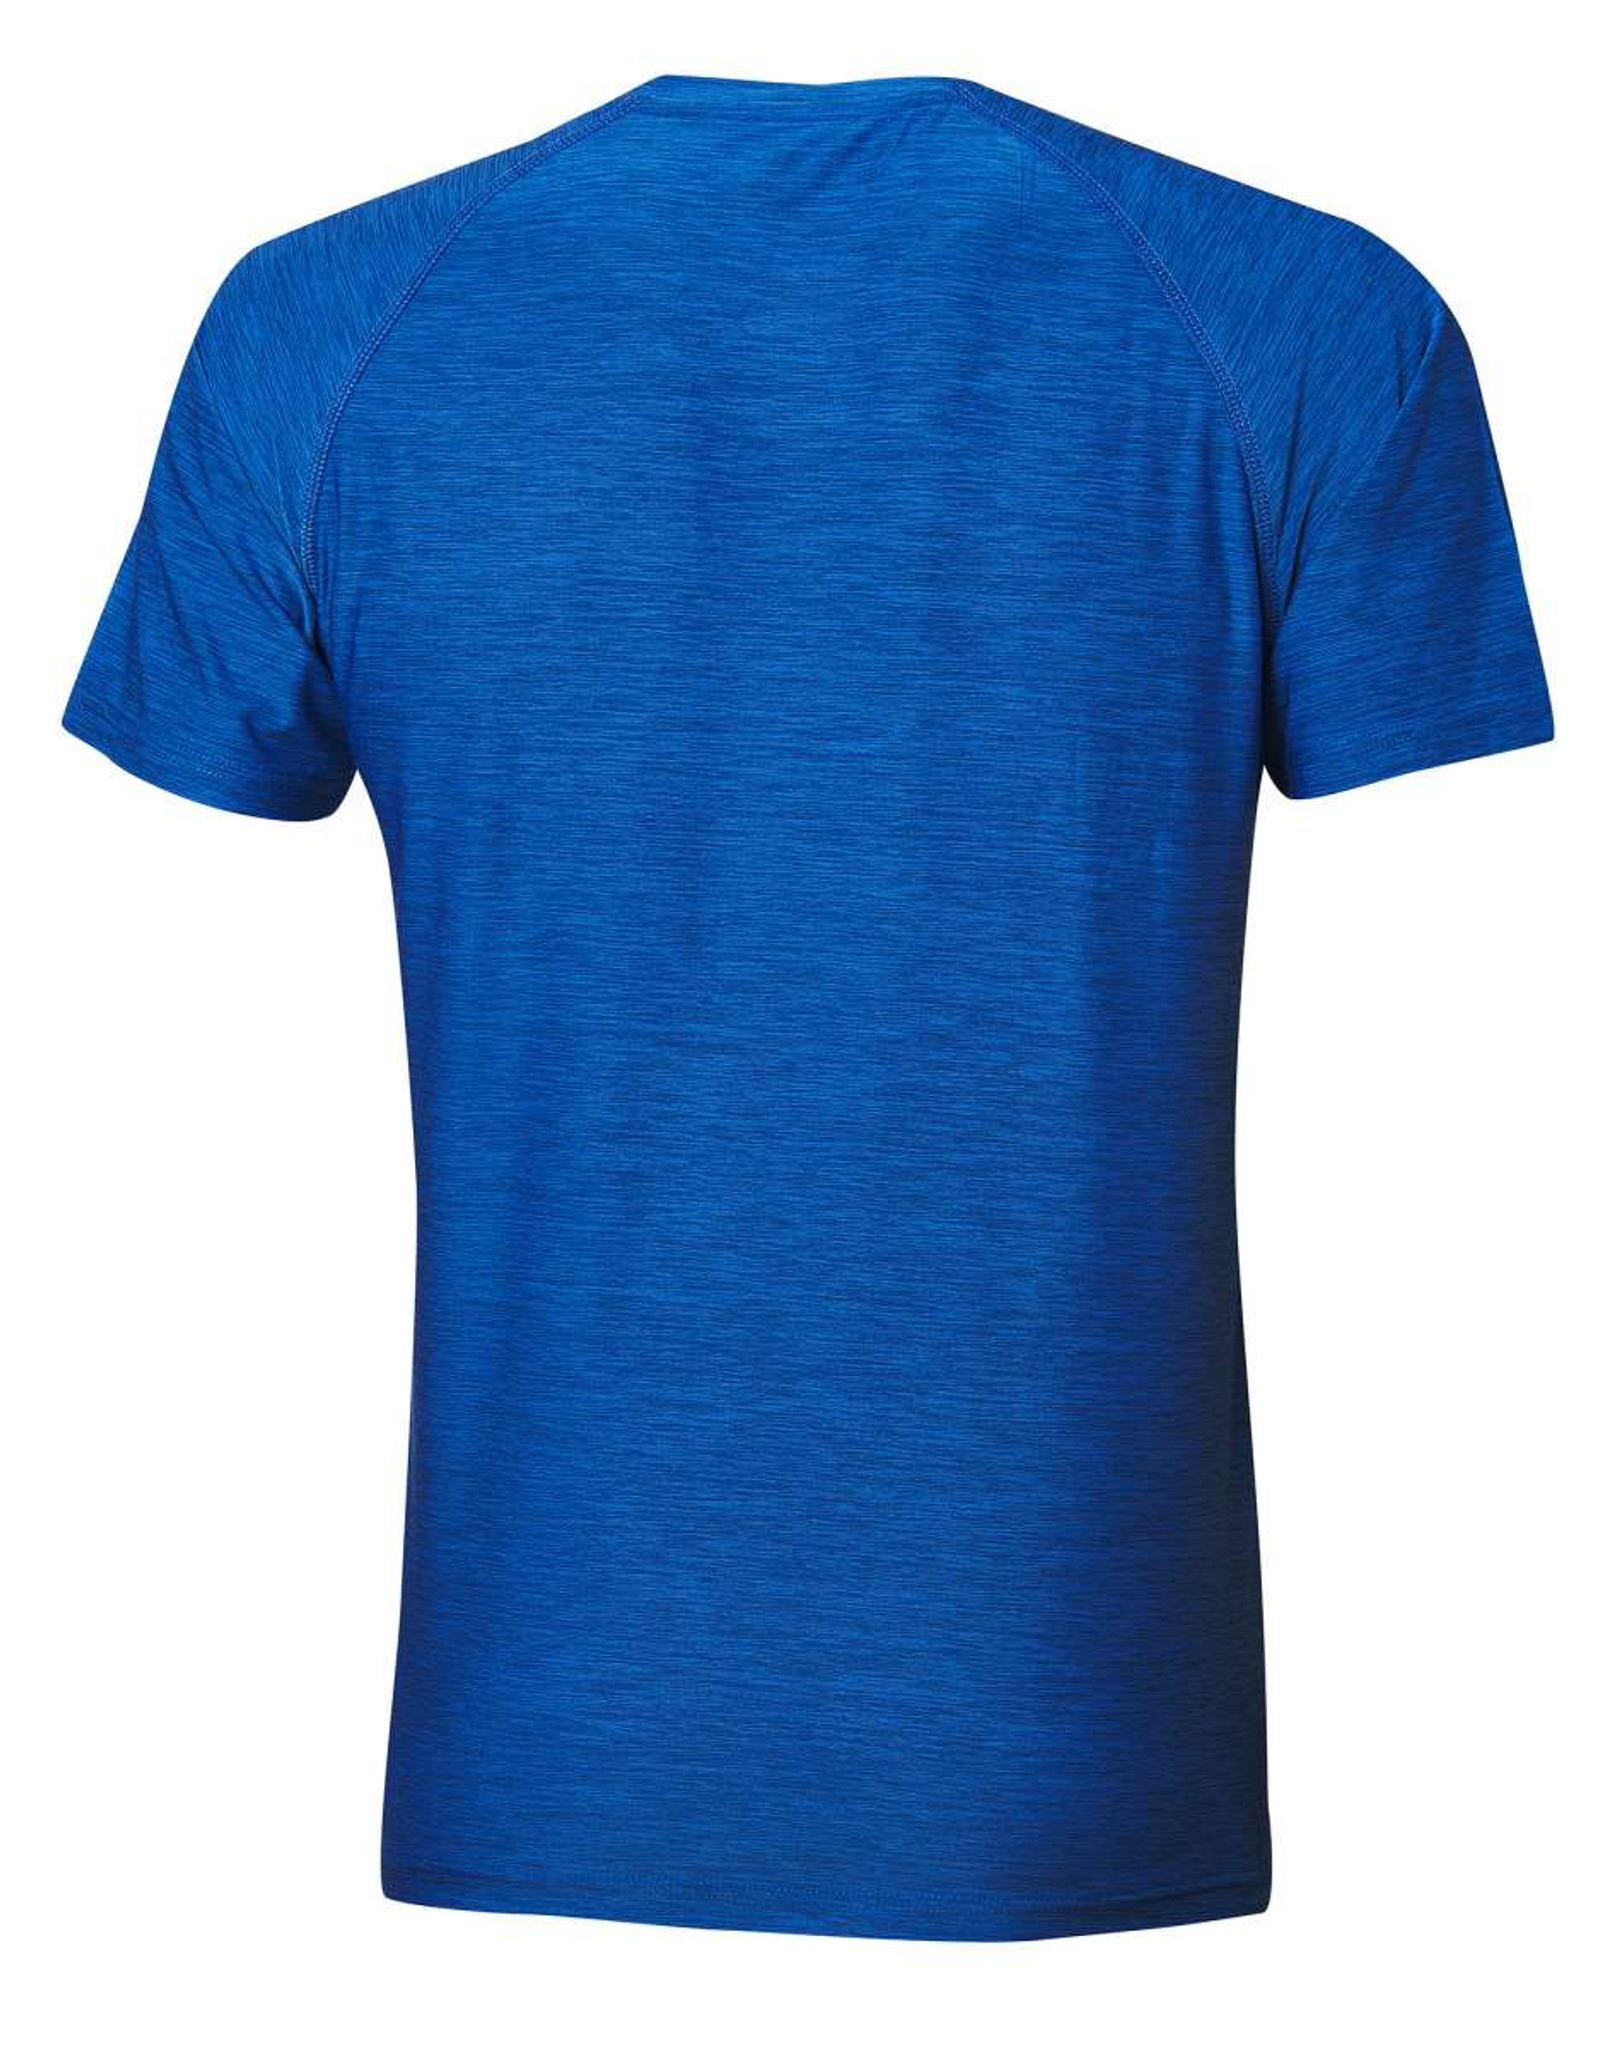 Melange Ping-Pong Andro Depot T-shirt - Alpha Casual